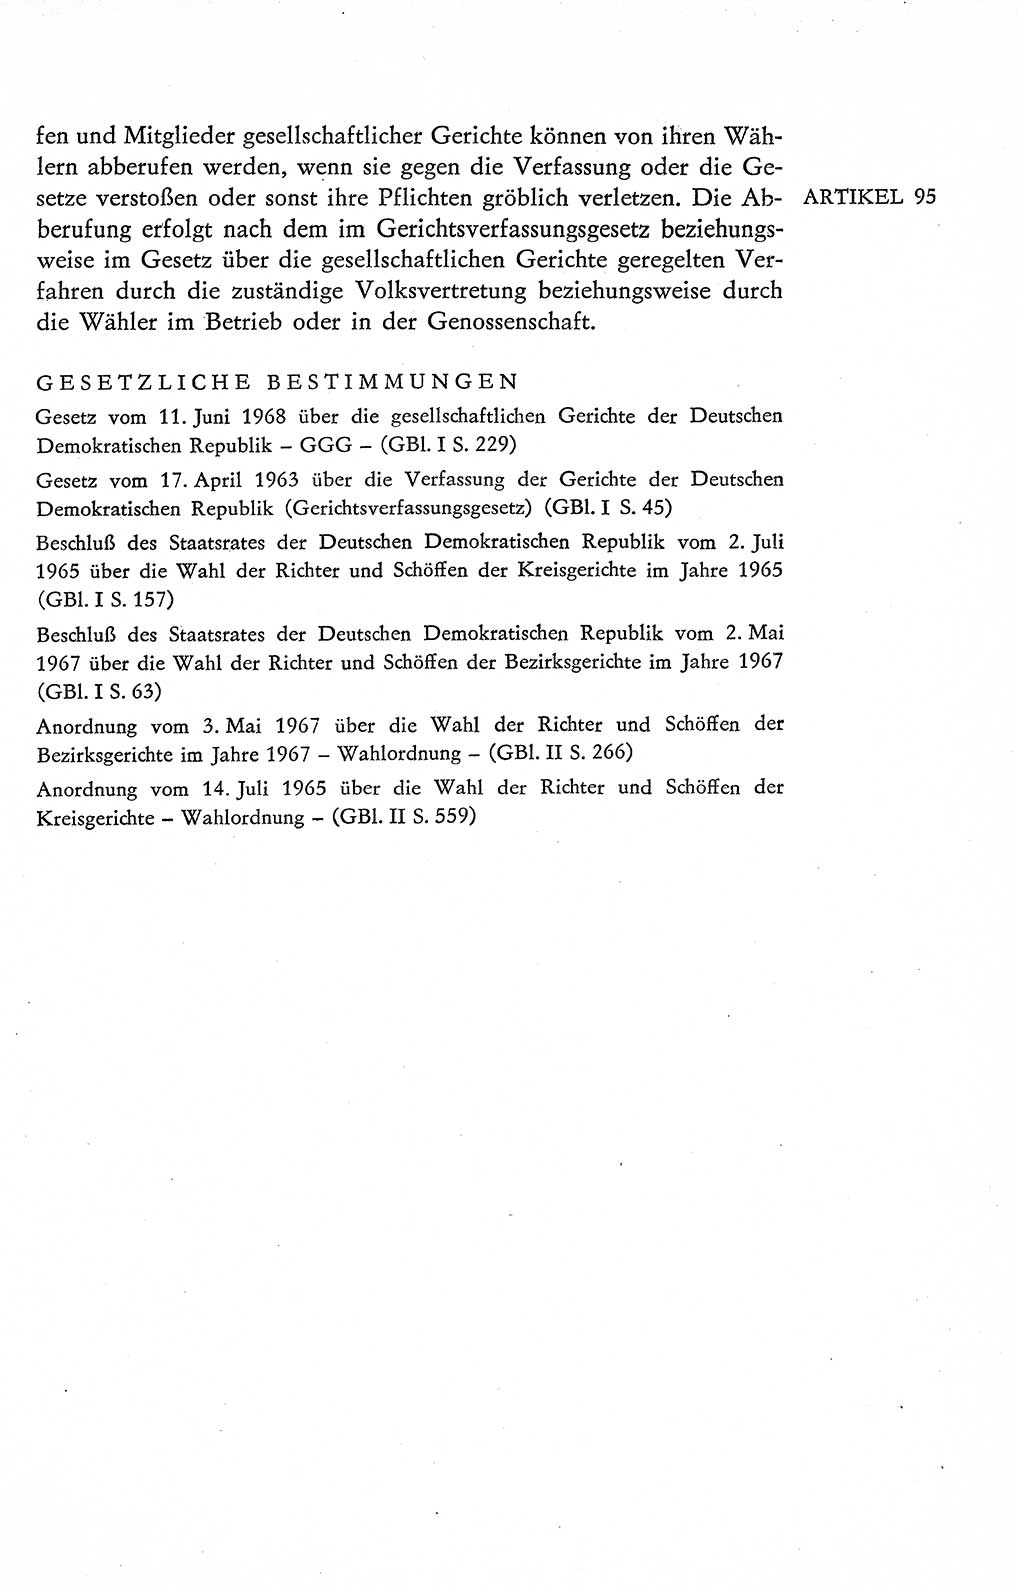 Verfassung der Deutschen Demokratischen Republik (DDR), Dokumente, Kommentar 1969, Band 2, Seite 457 (Verf. DDR Dok. Komm. 1969, Bd. 2, S. 457)